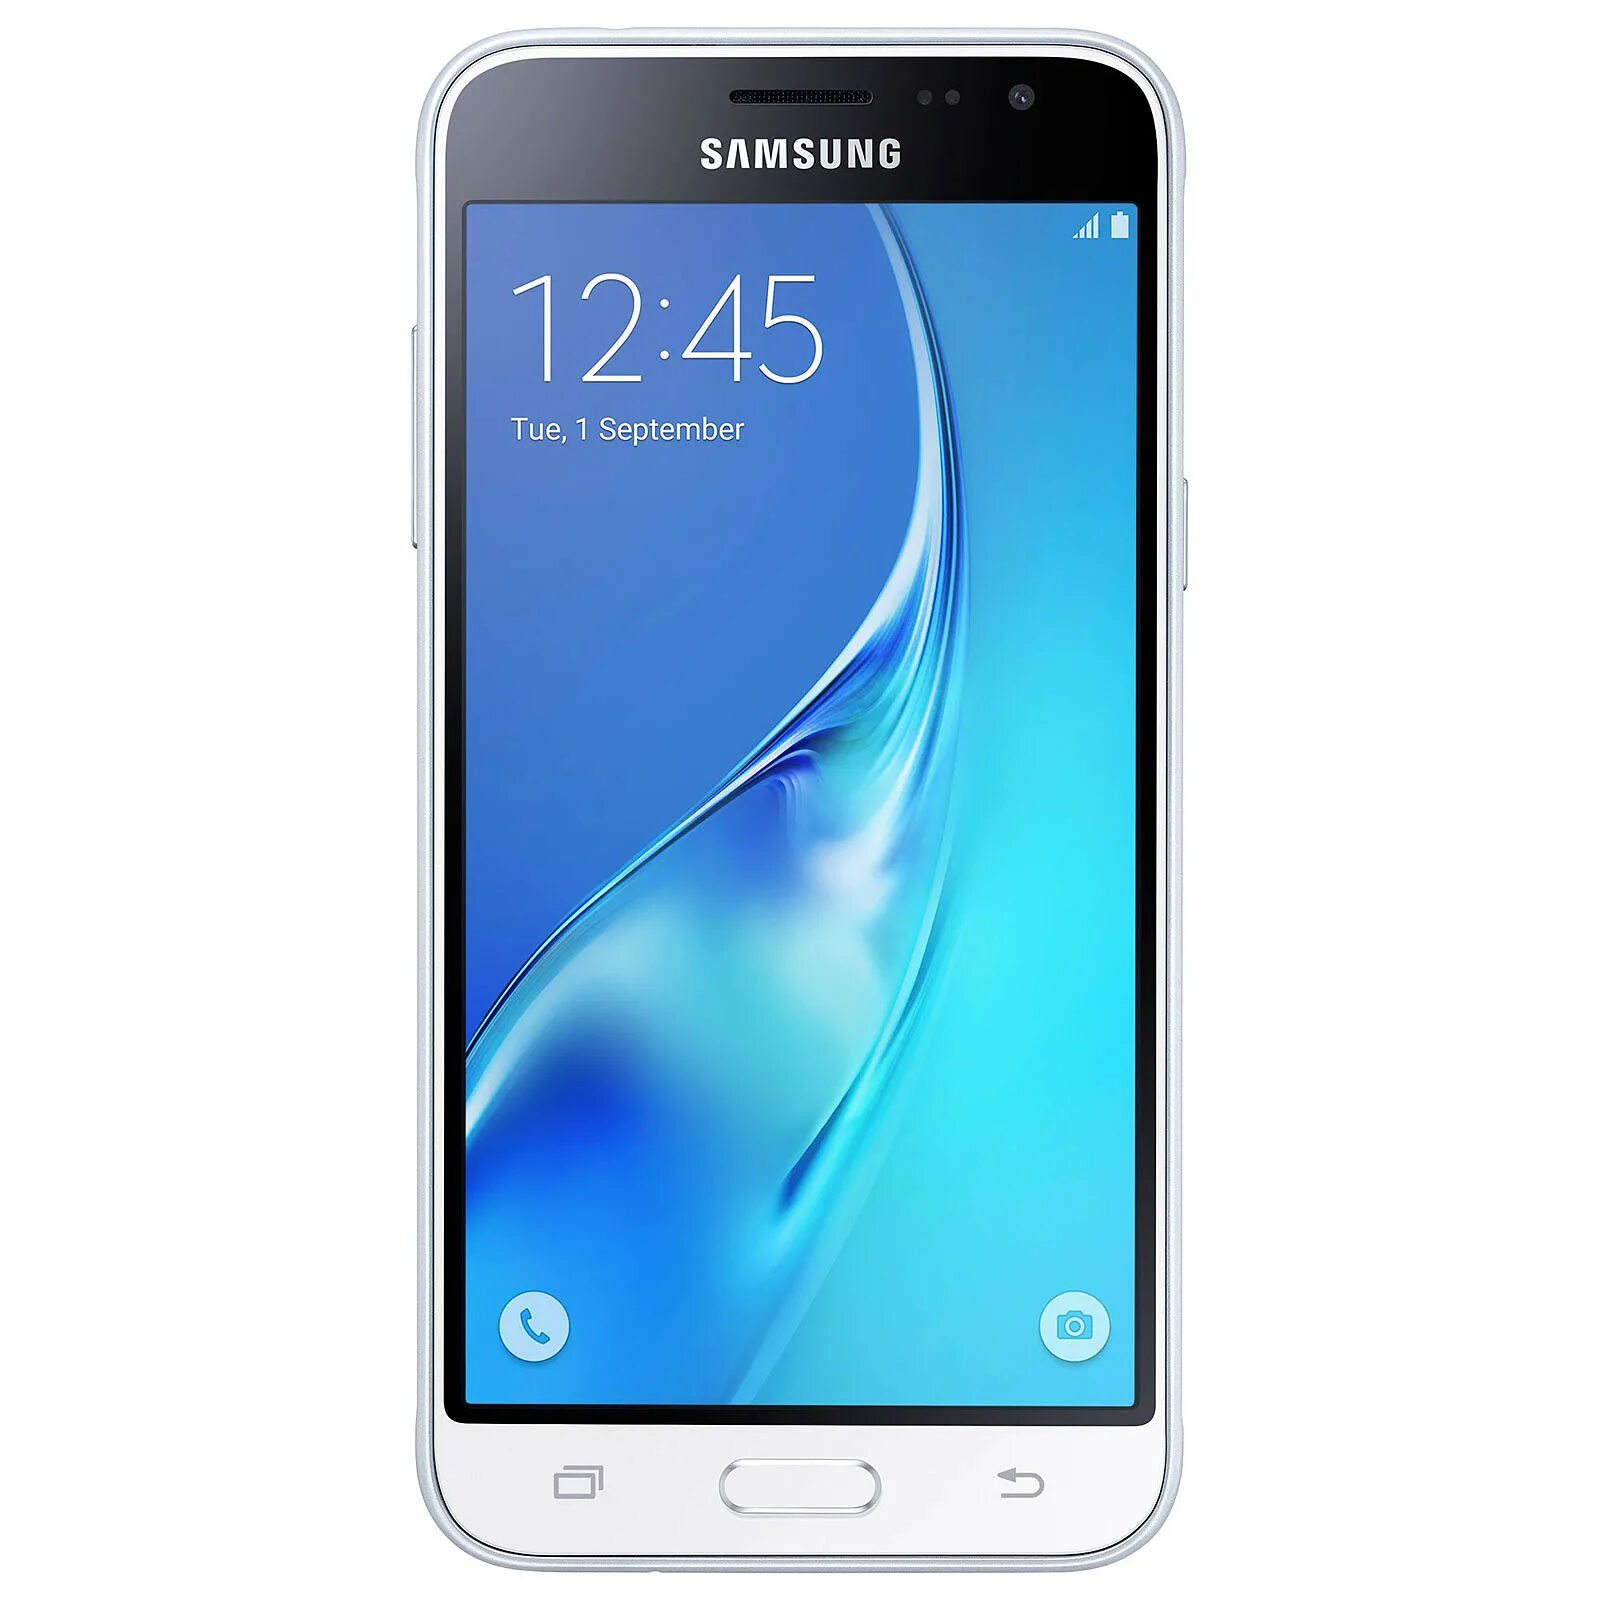 Samsung SM-j320f. Galaxy j1 Mini SM-j105h. Самсунг SM-j120f. Samsung Galaxy j1 2016. Samsung j105h mini